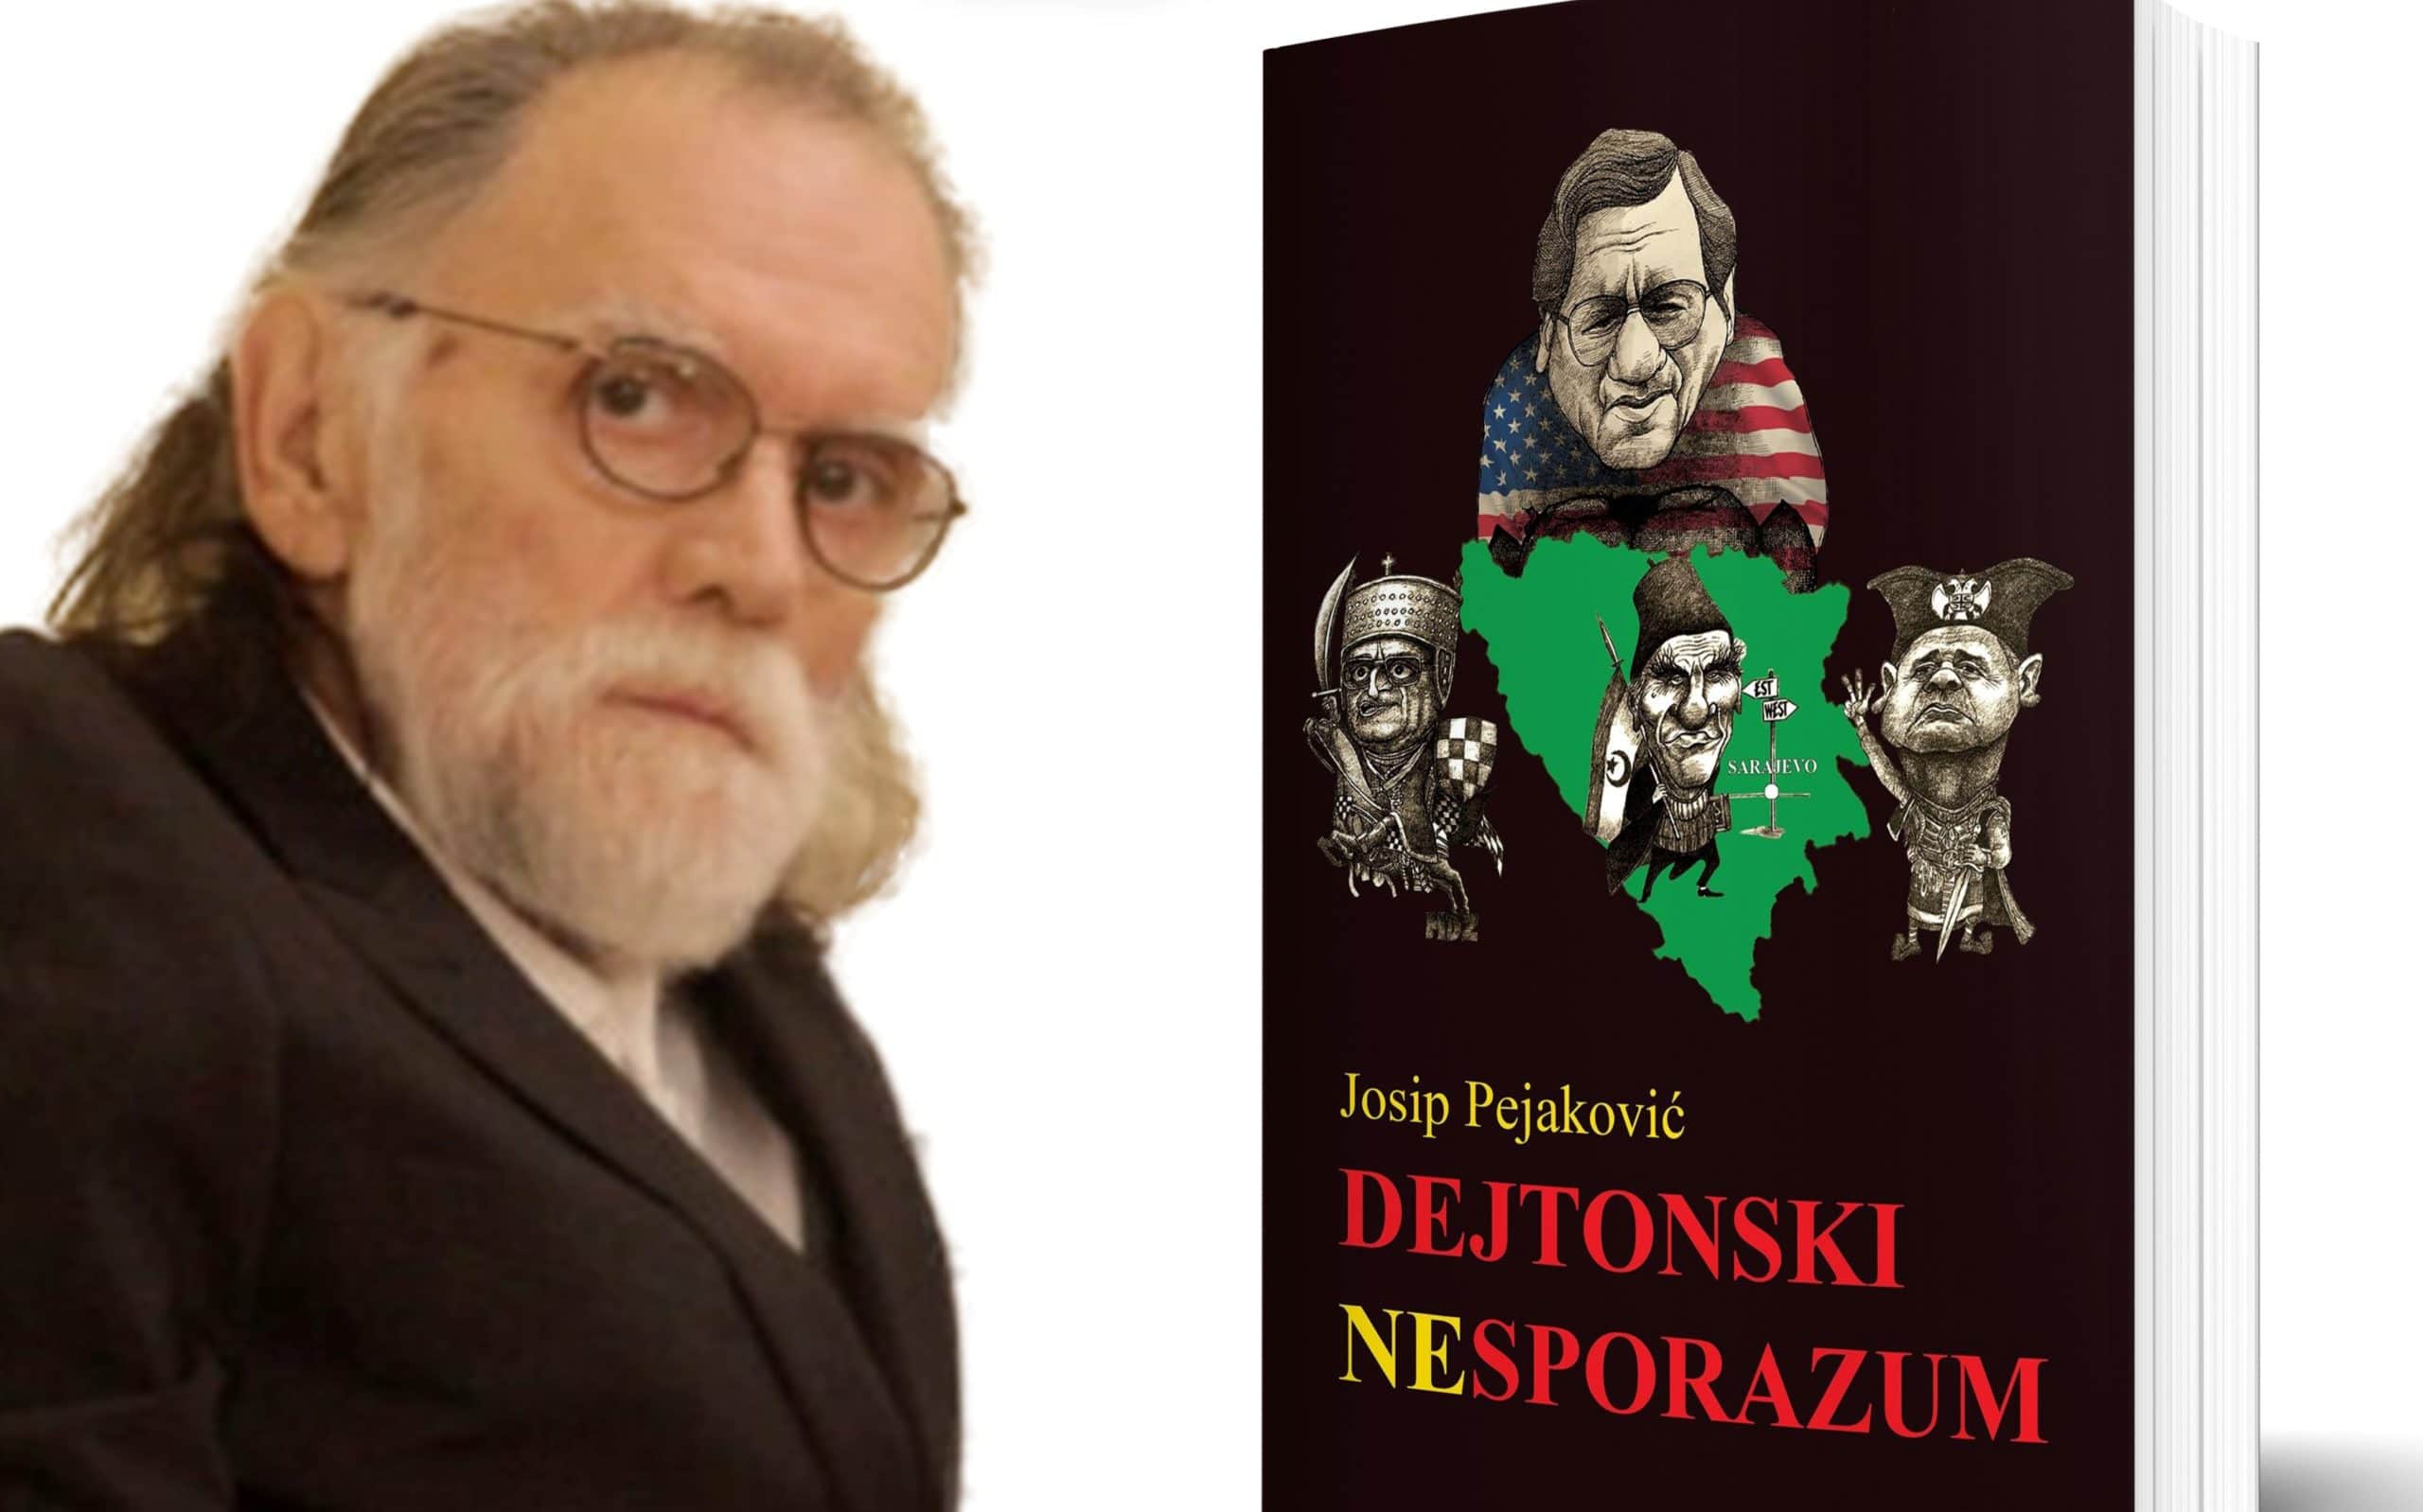 Zakazana promocija knjige „Dejtonski nesporazum“ Josipa Pejakovića